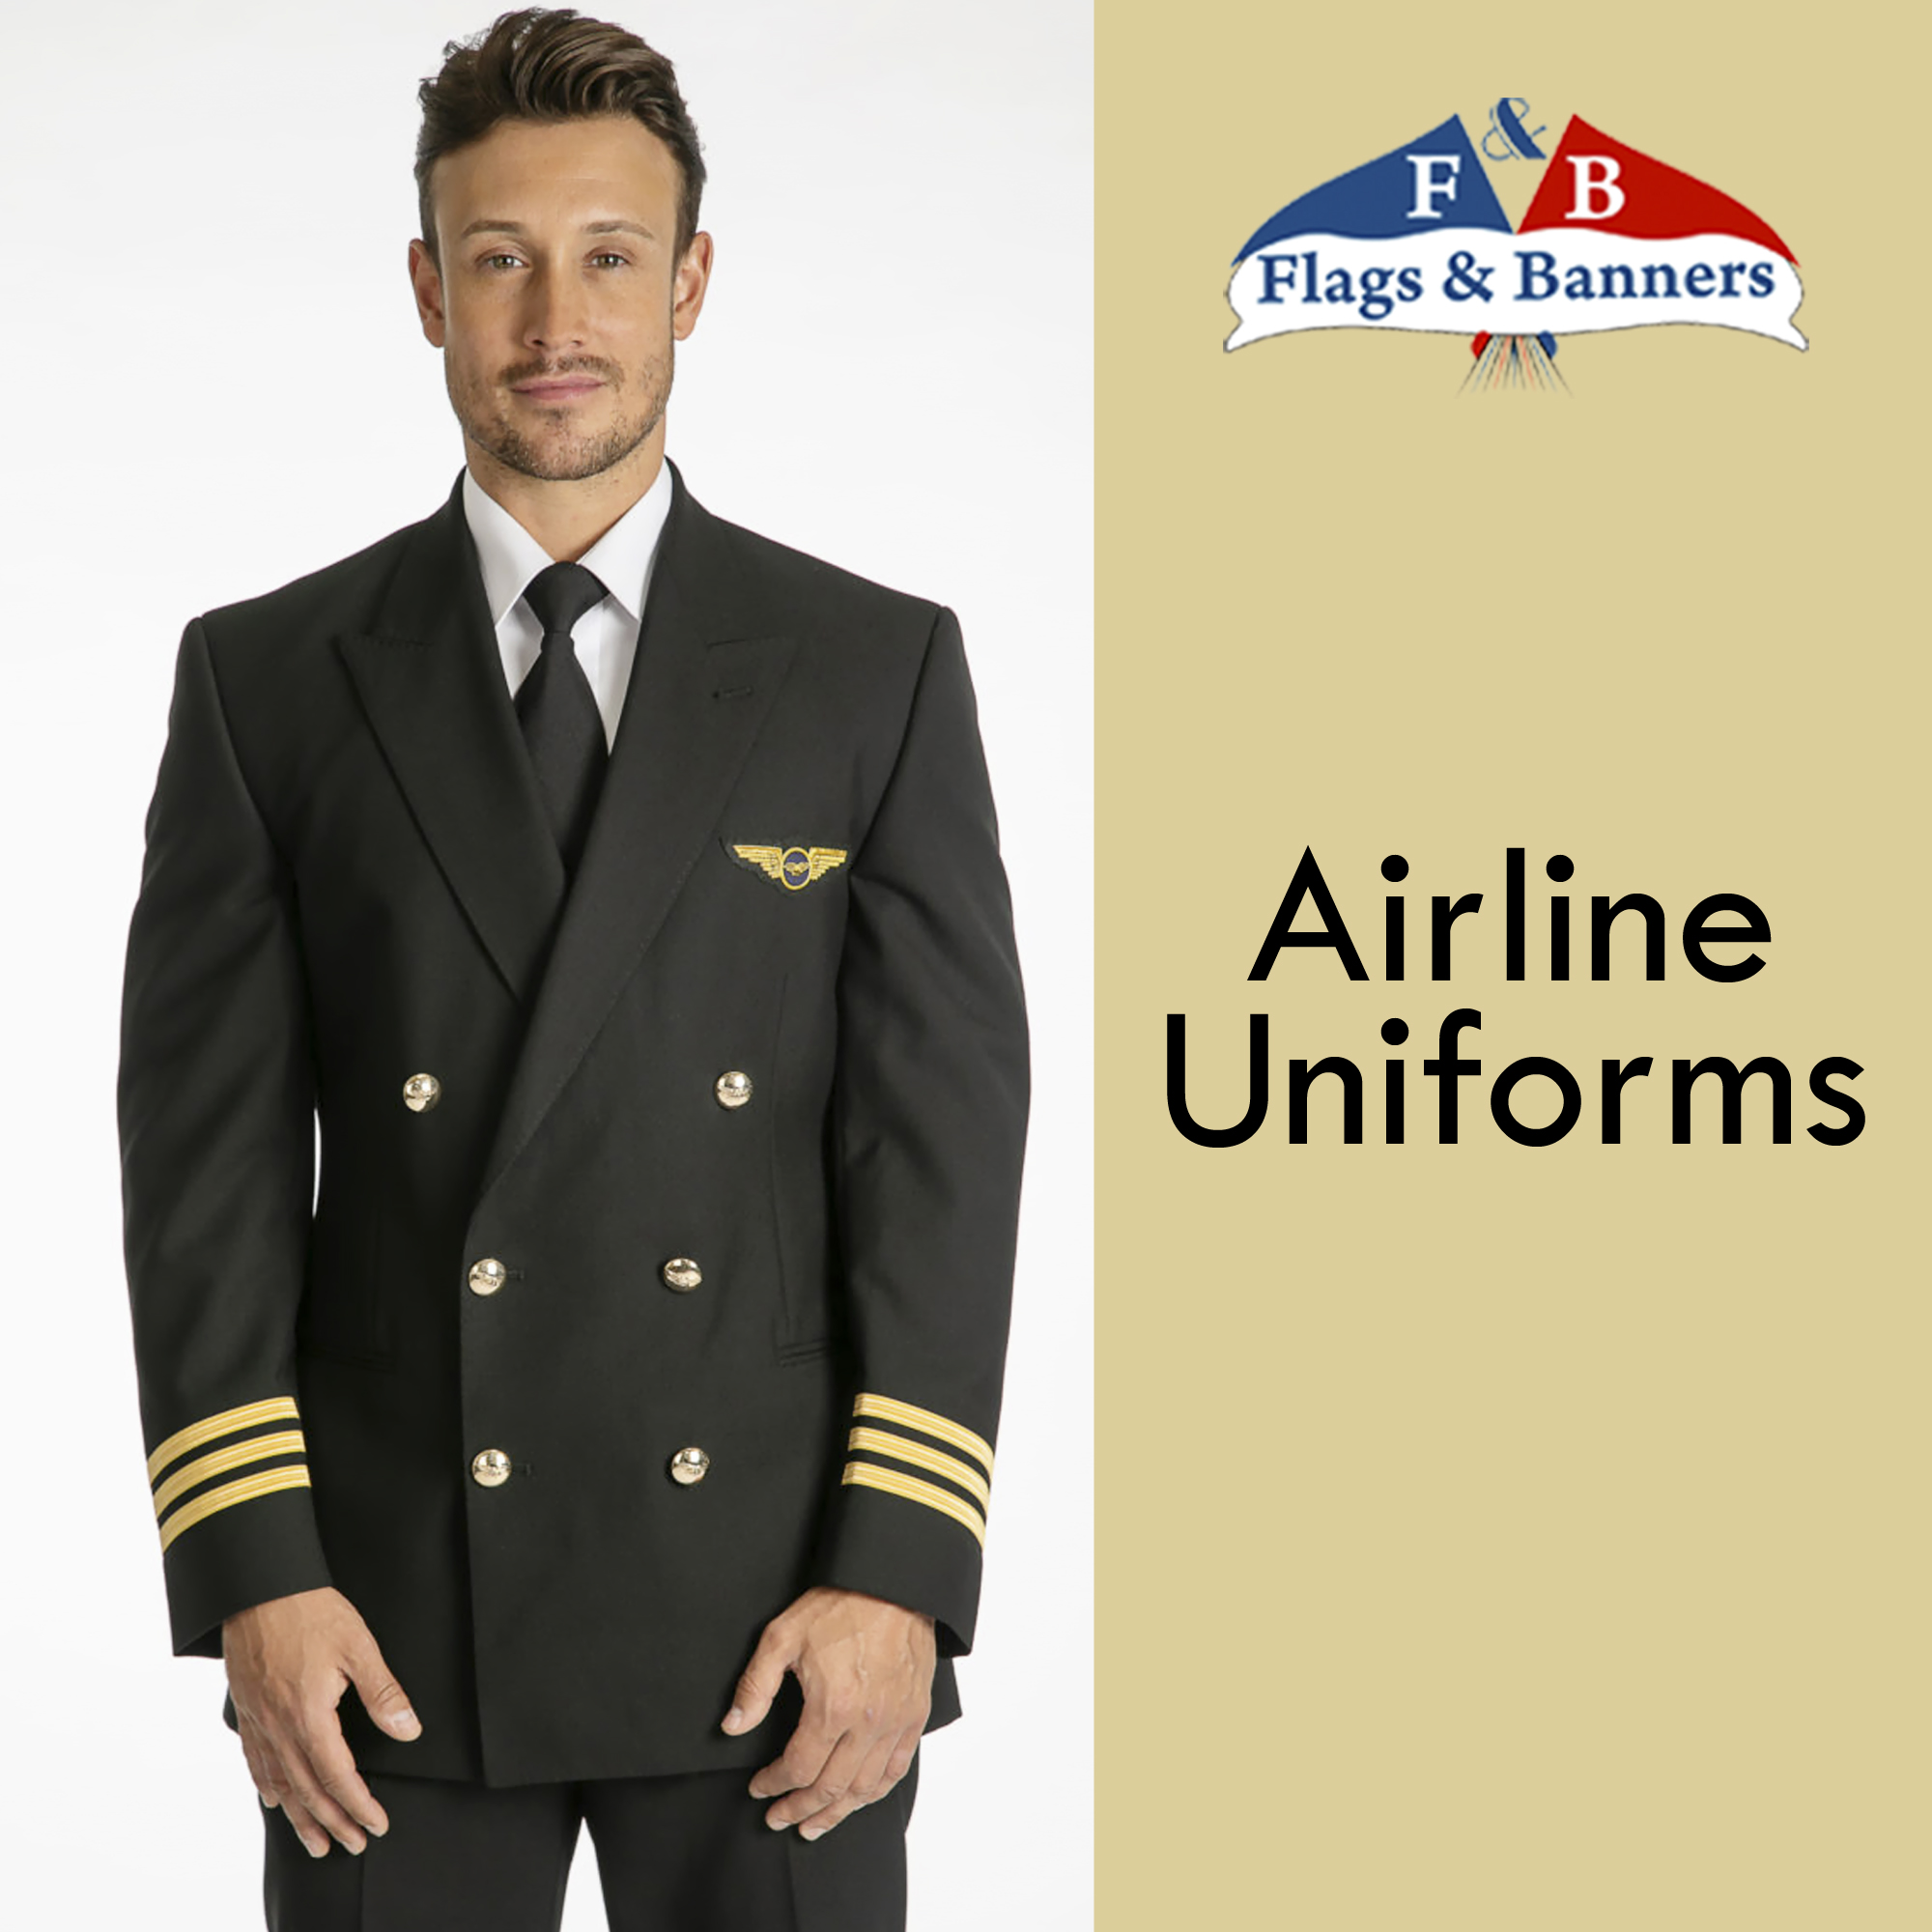 Airline Uniforms 01